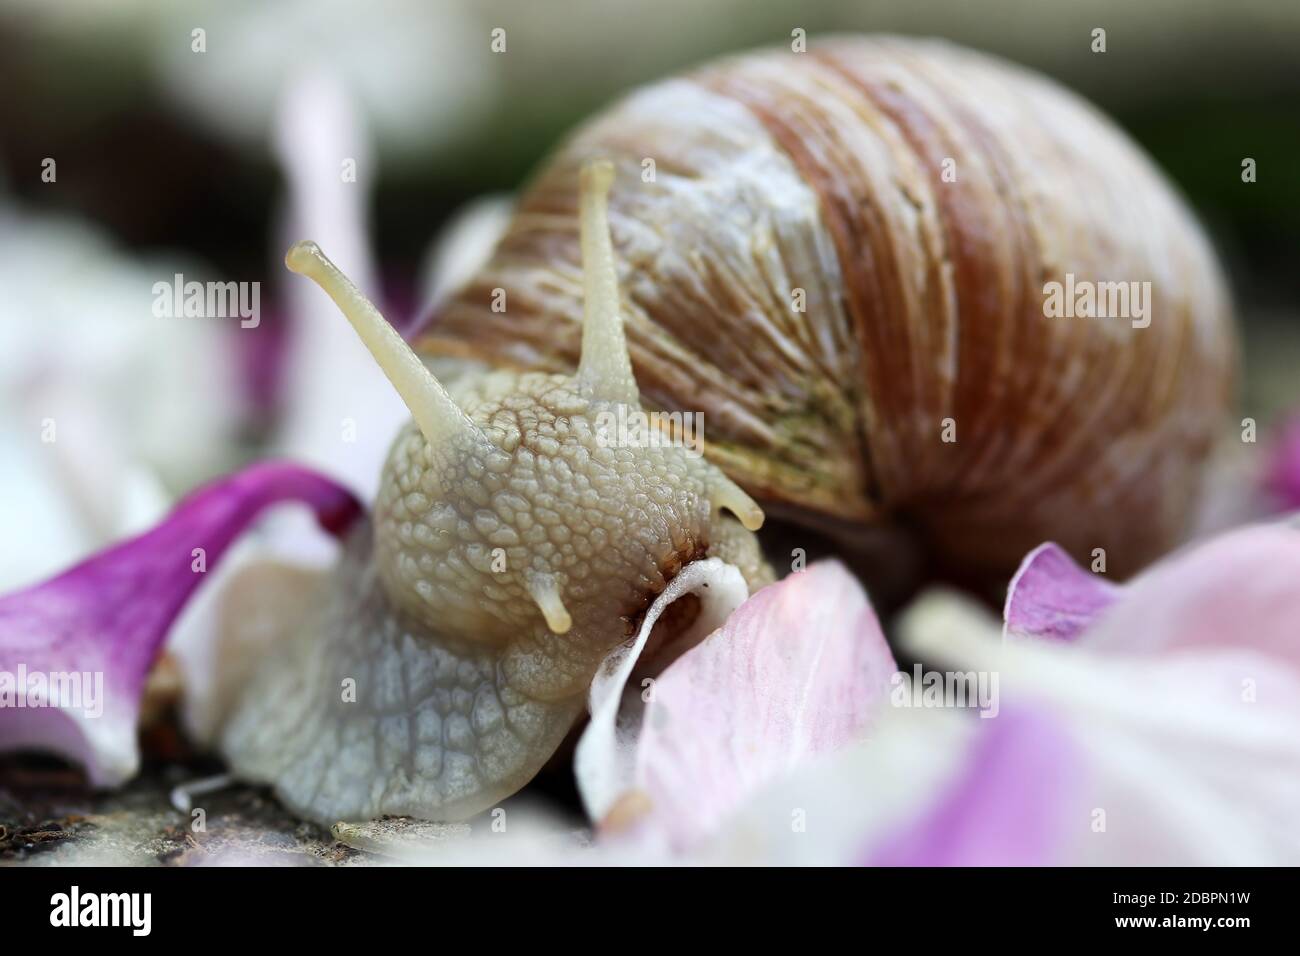 Close-up of a Roman snail eating a petal Stock Photo